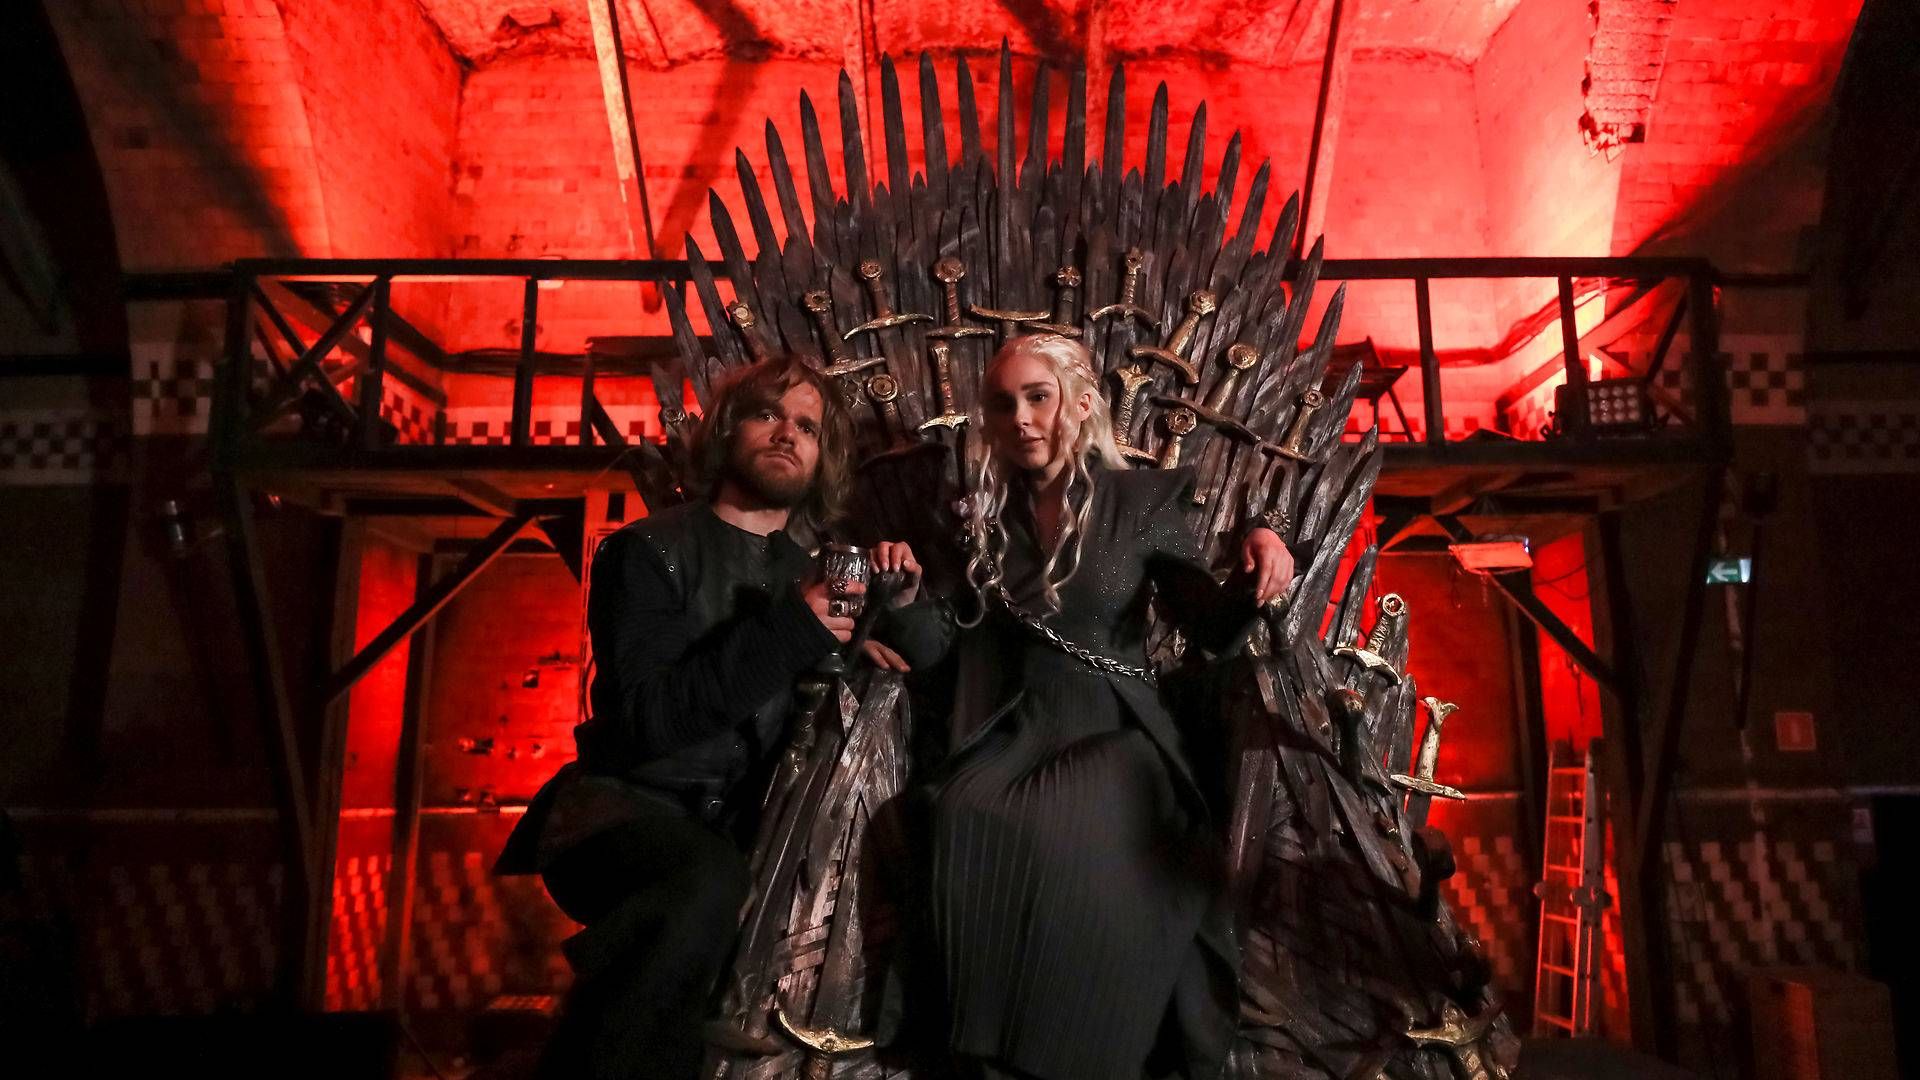 Streamingtjenester som HBO, der bl.a. står bag serien Game of Thrones, skal også investere i lokale egenproduktioner, mener Canadas kulturminister | Foto: Evgenia Novozhenina/Reuters/Ritzau Scanpix